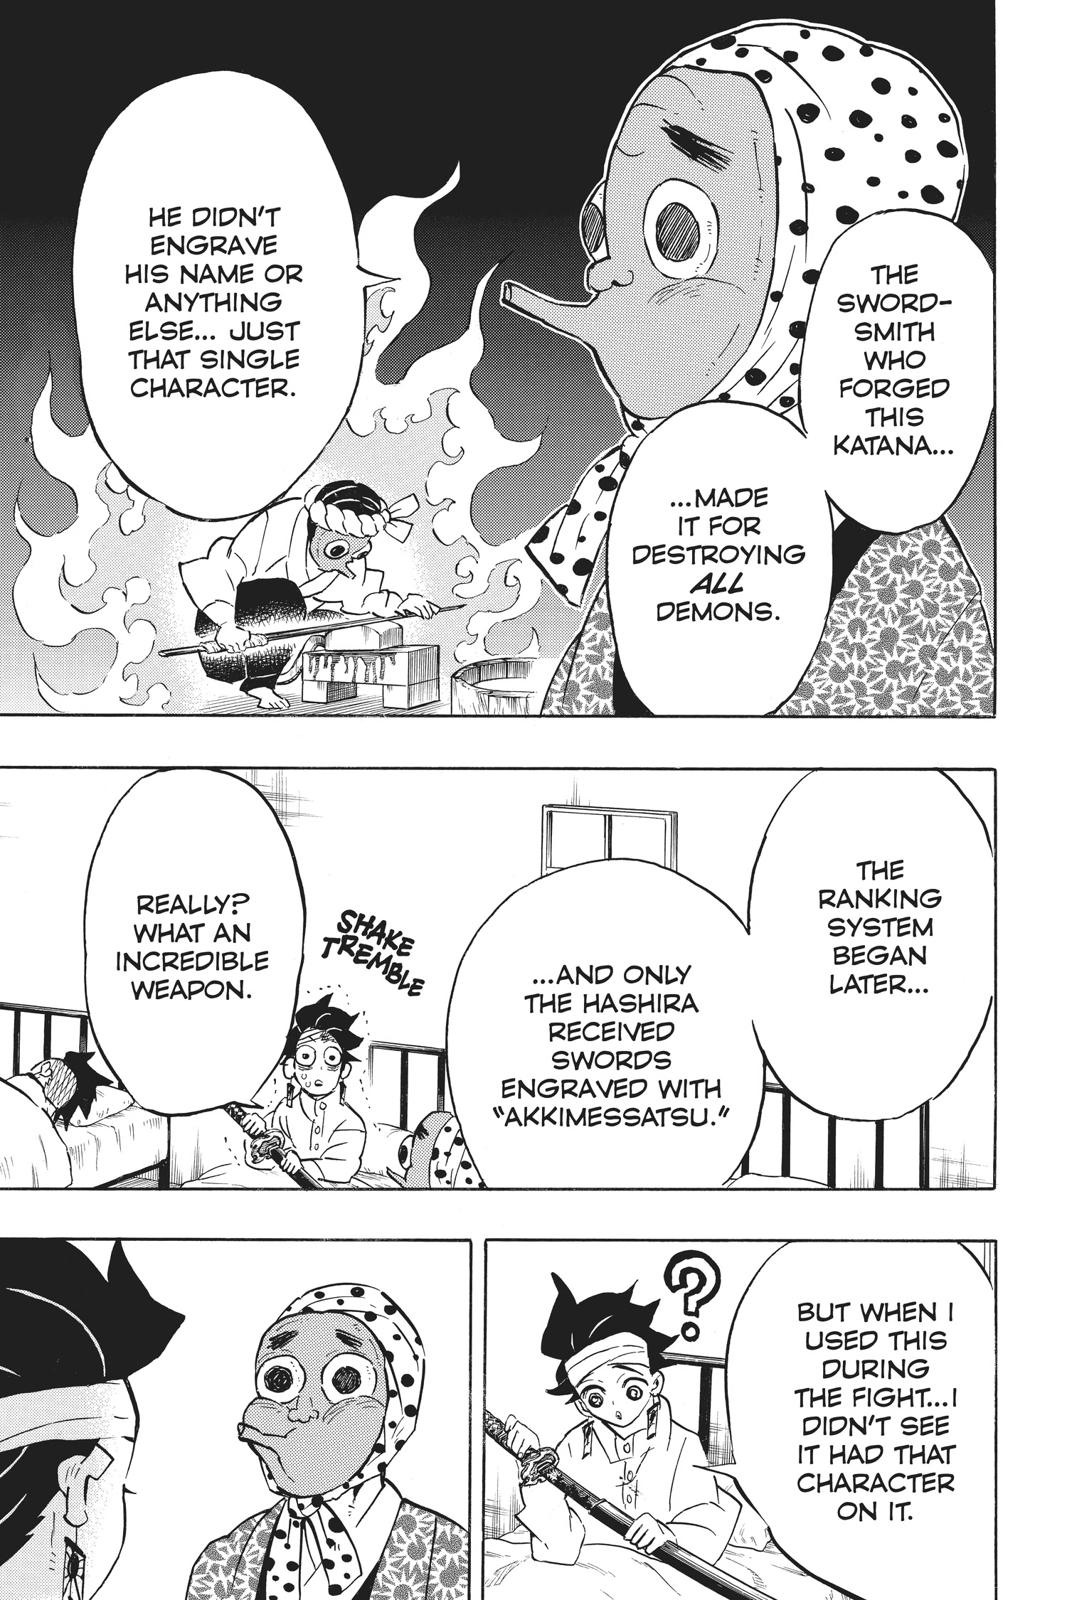 Demon Slayer Manga Manga Chapter - 129 - image 11